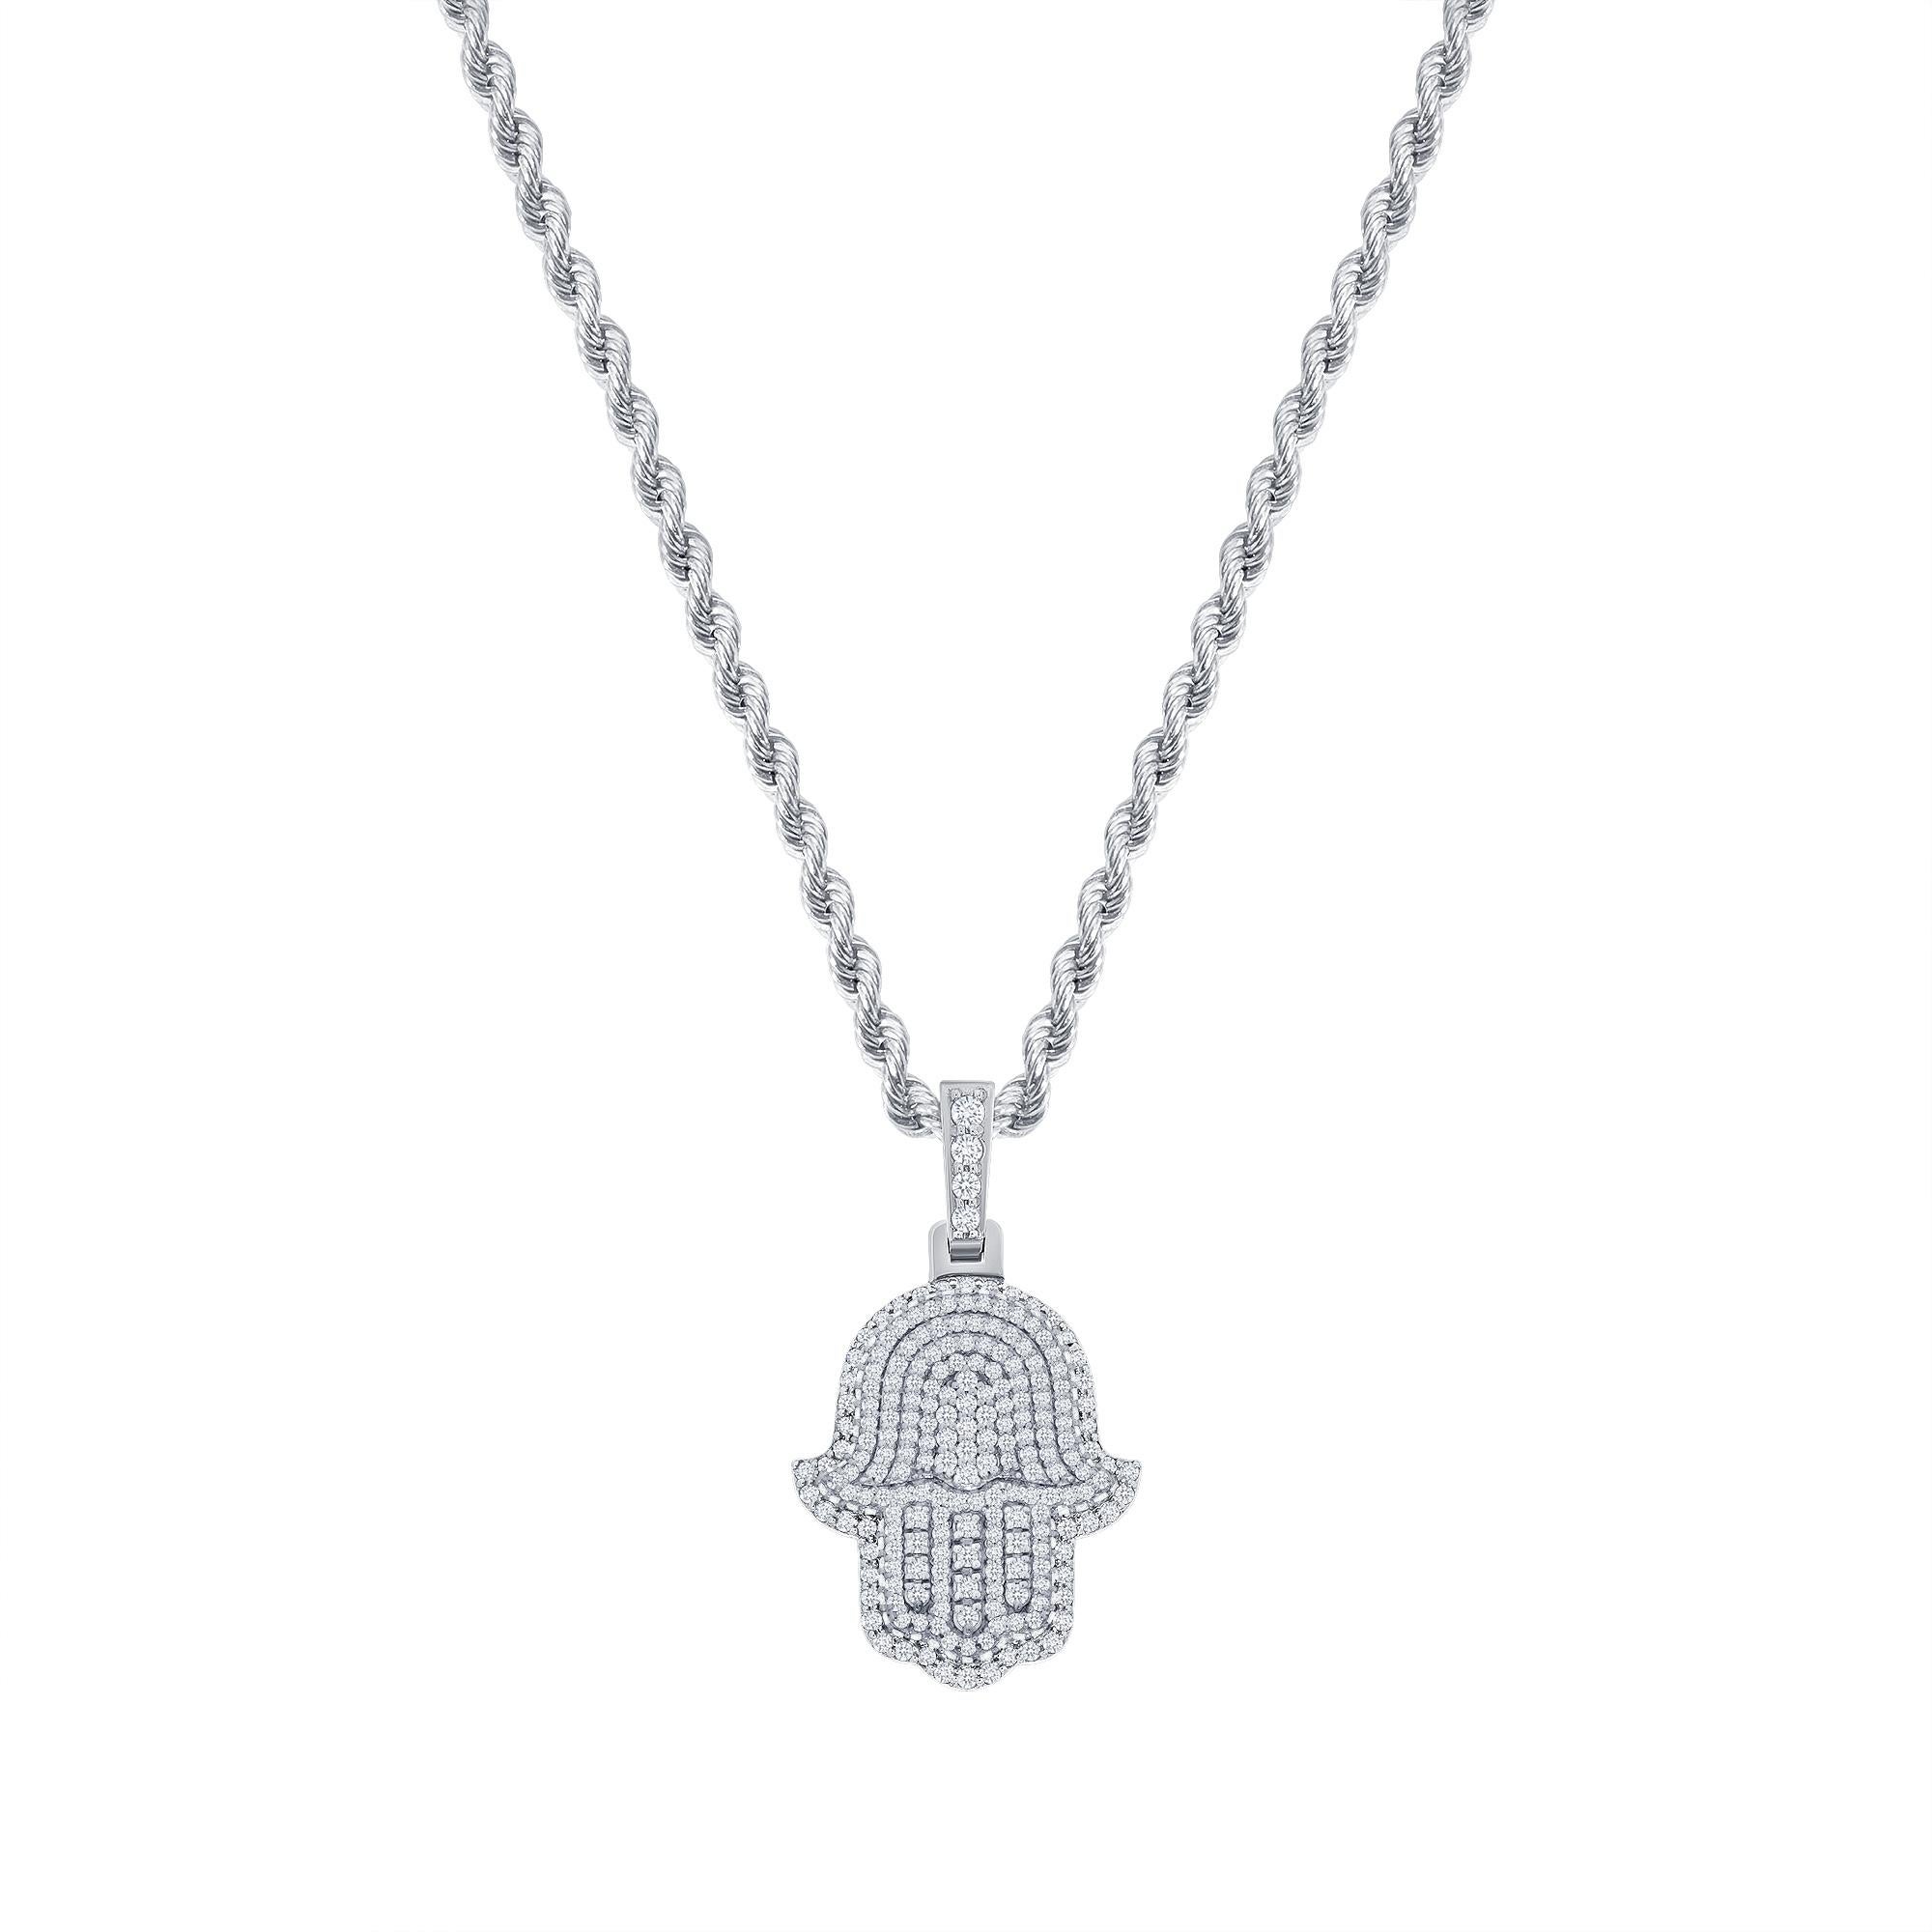 Ce collier en diamants Hamsa offre un look à la fois spirituel et tendance. 

Métal : Or 14k
Taille du diamant : Ronde
Nombre total de carats de diamants : 2 carats
Clarté du diamant : VS
Couleur du diamant : F-G
Longueur du collier : 24